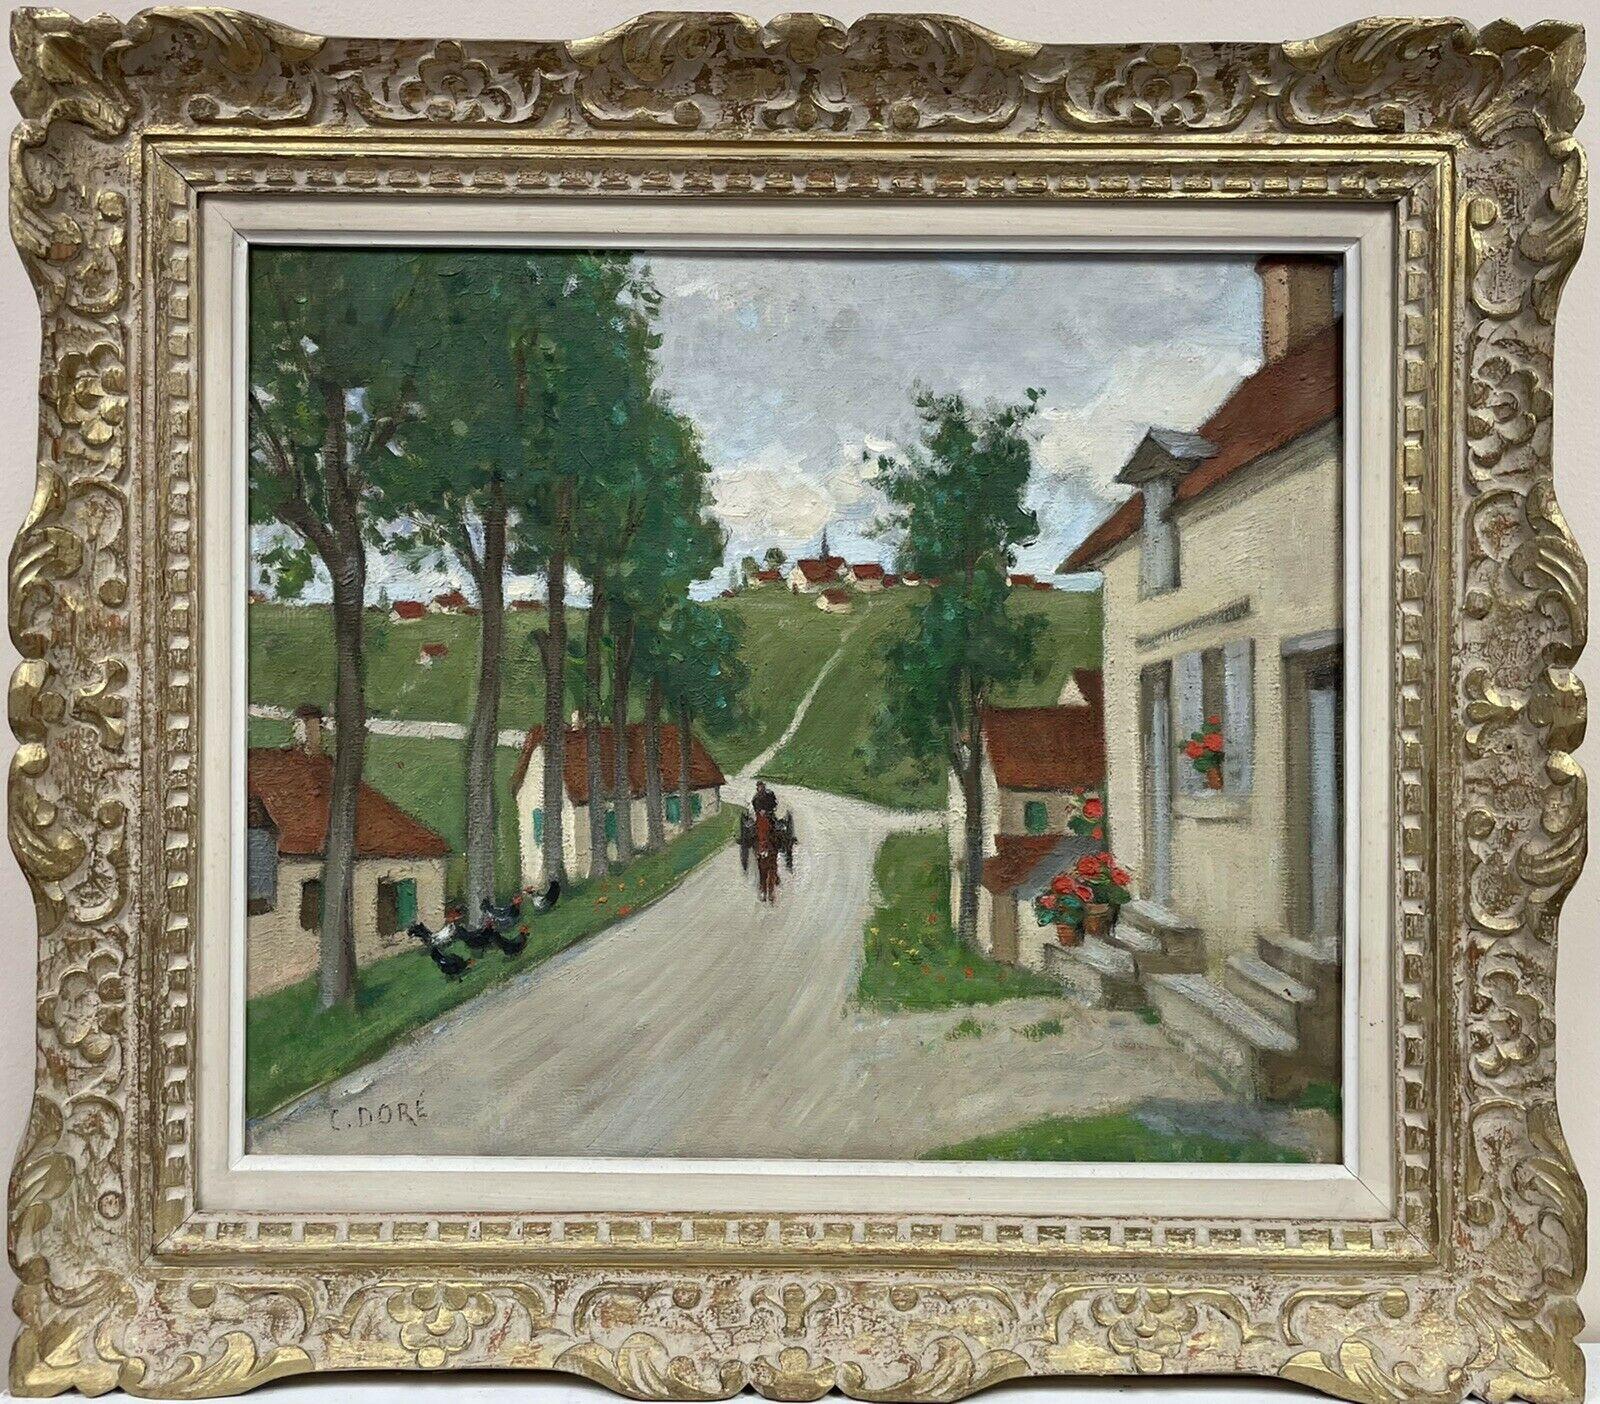 Figurative Painting Constant Dore - Peinture à l'huile originale de l'école française Pont Aven représentant une scène de rue d'un village avec cheval et chariot